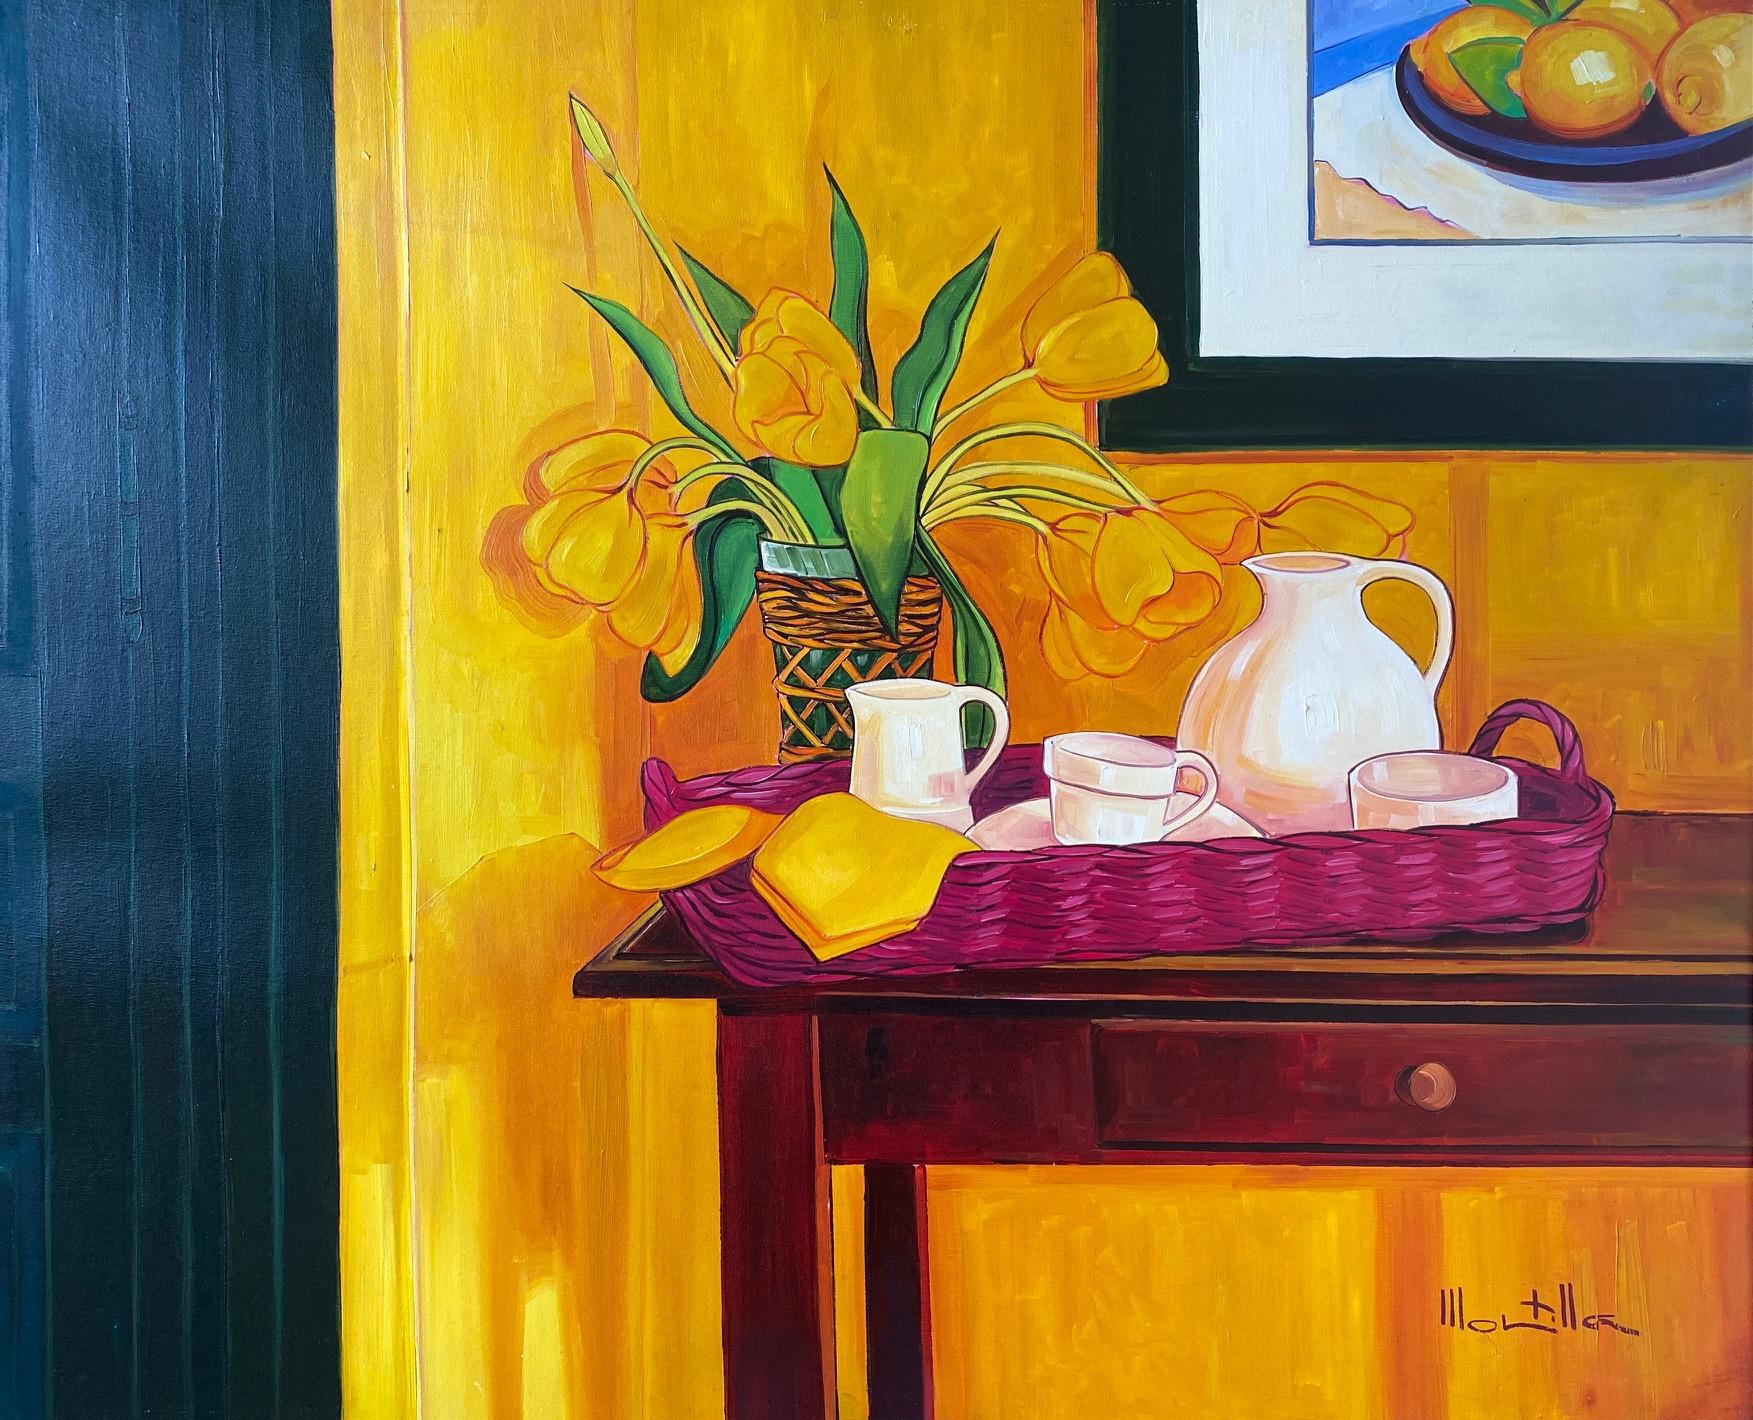 Figurative Painting Chico Montilla - Tulipes jaunes. Nature morte expressionniste colorée : fleurs, thé. Huile sur toile